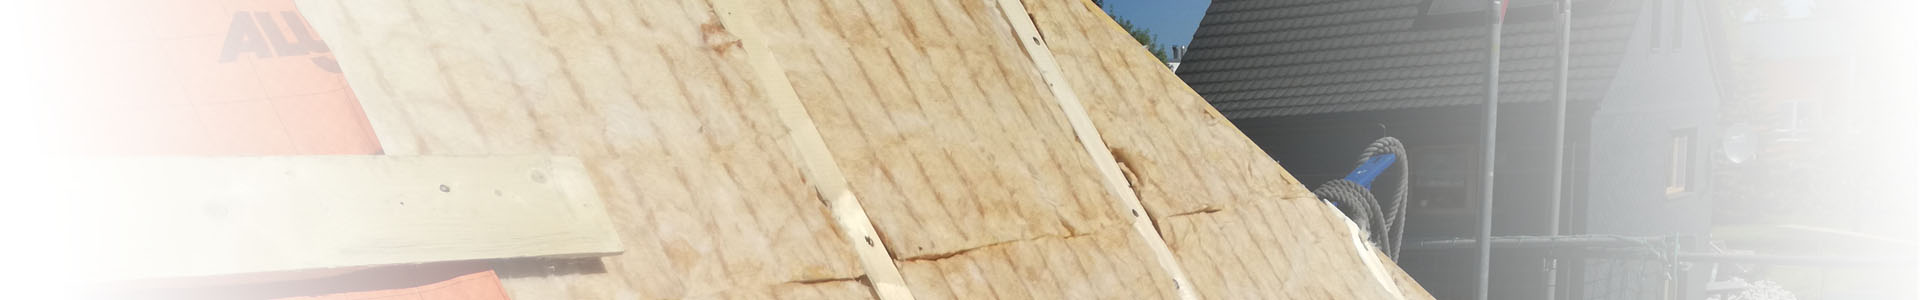 Zwischensparrendämmung bei einer Dachsanierung von Außen